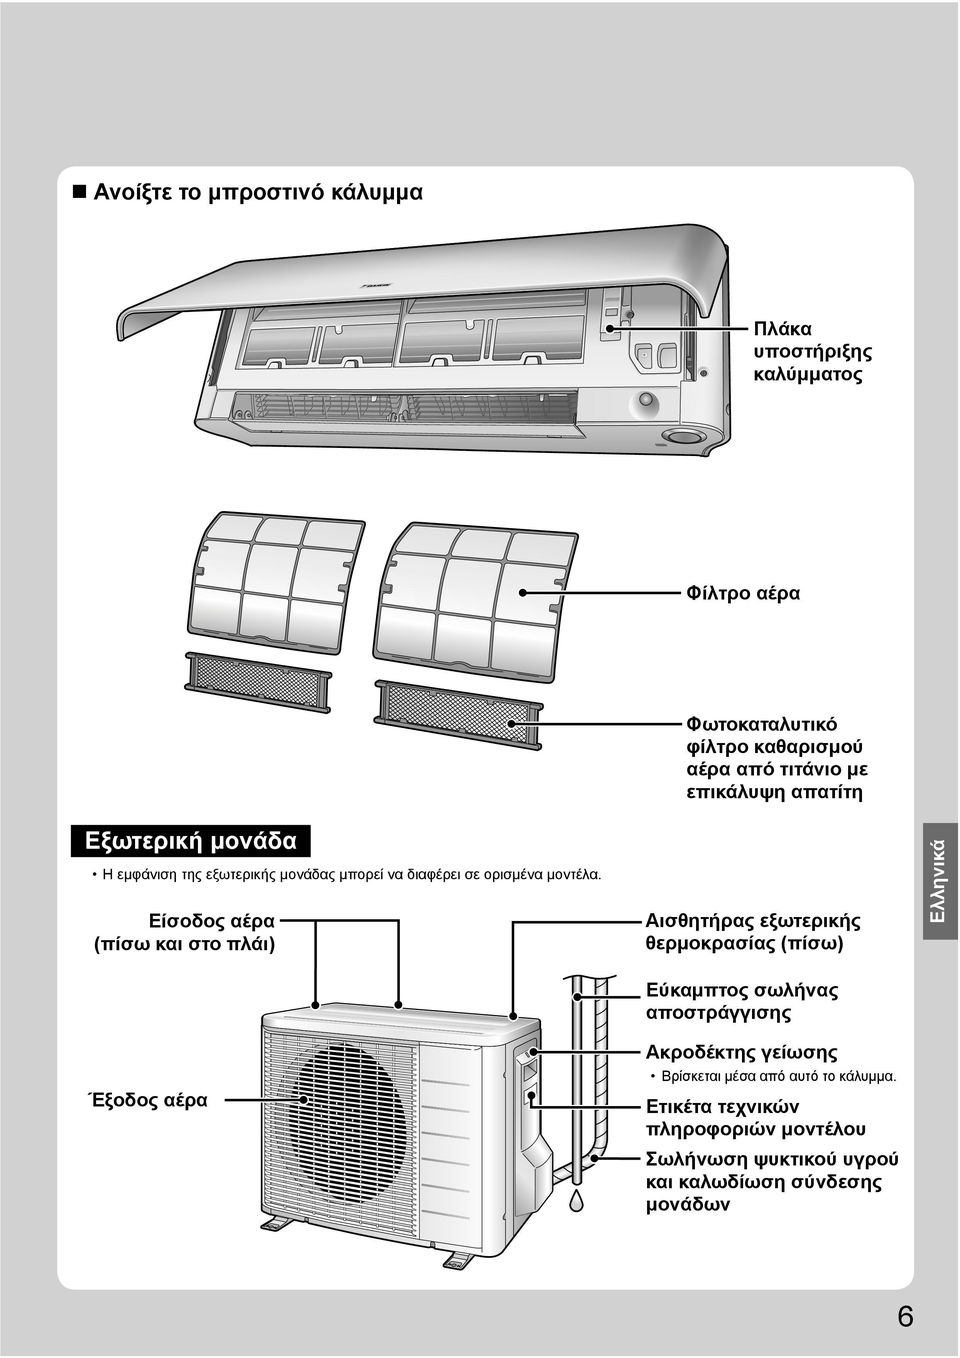 Είσοδος αέρα (πίσω και στο πλάι) Αισθητήρας εξωτερικής θερμοκρασίας (πίσω) Eλληνικά Έξοδος αέρα Εύκαμπτος σωλήνας αποστράγγισης